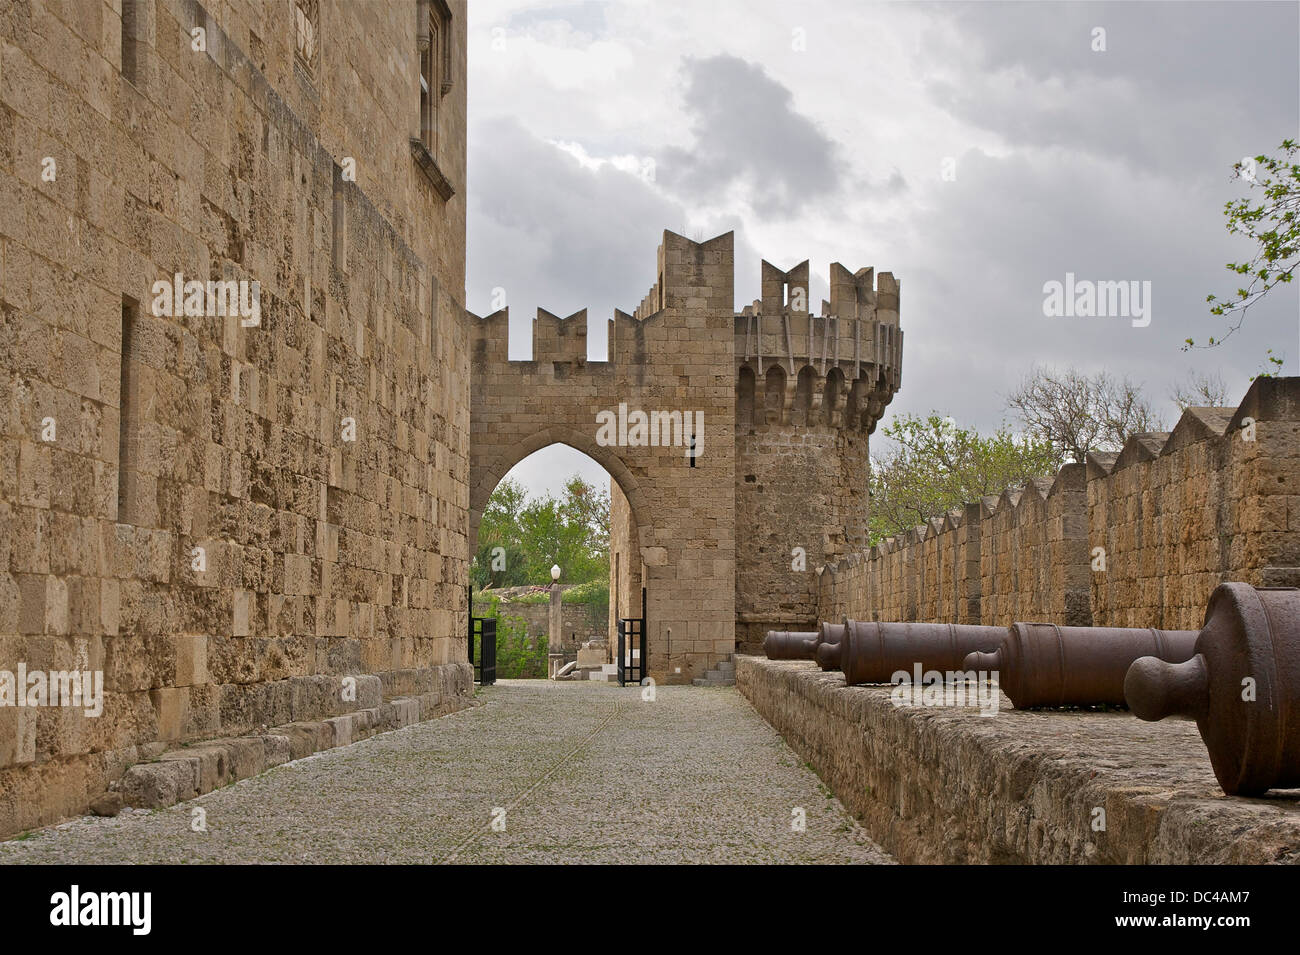 Wände, Tor, Turm und Kanonen, Palast des Großmeisters der Ritter von Rhodos, Rhodos Stadt, Griechenland. Stockfoto